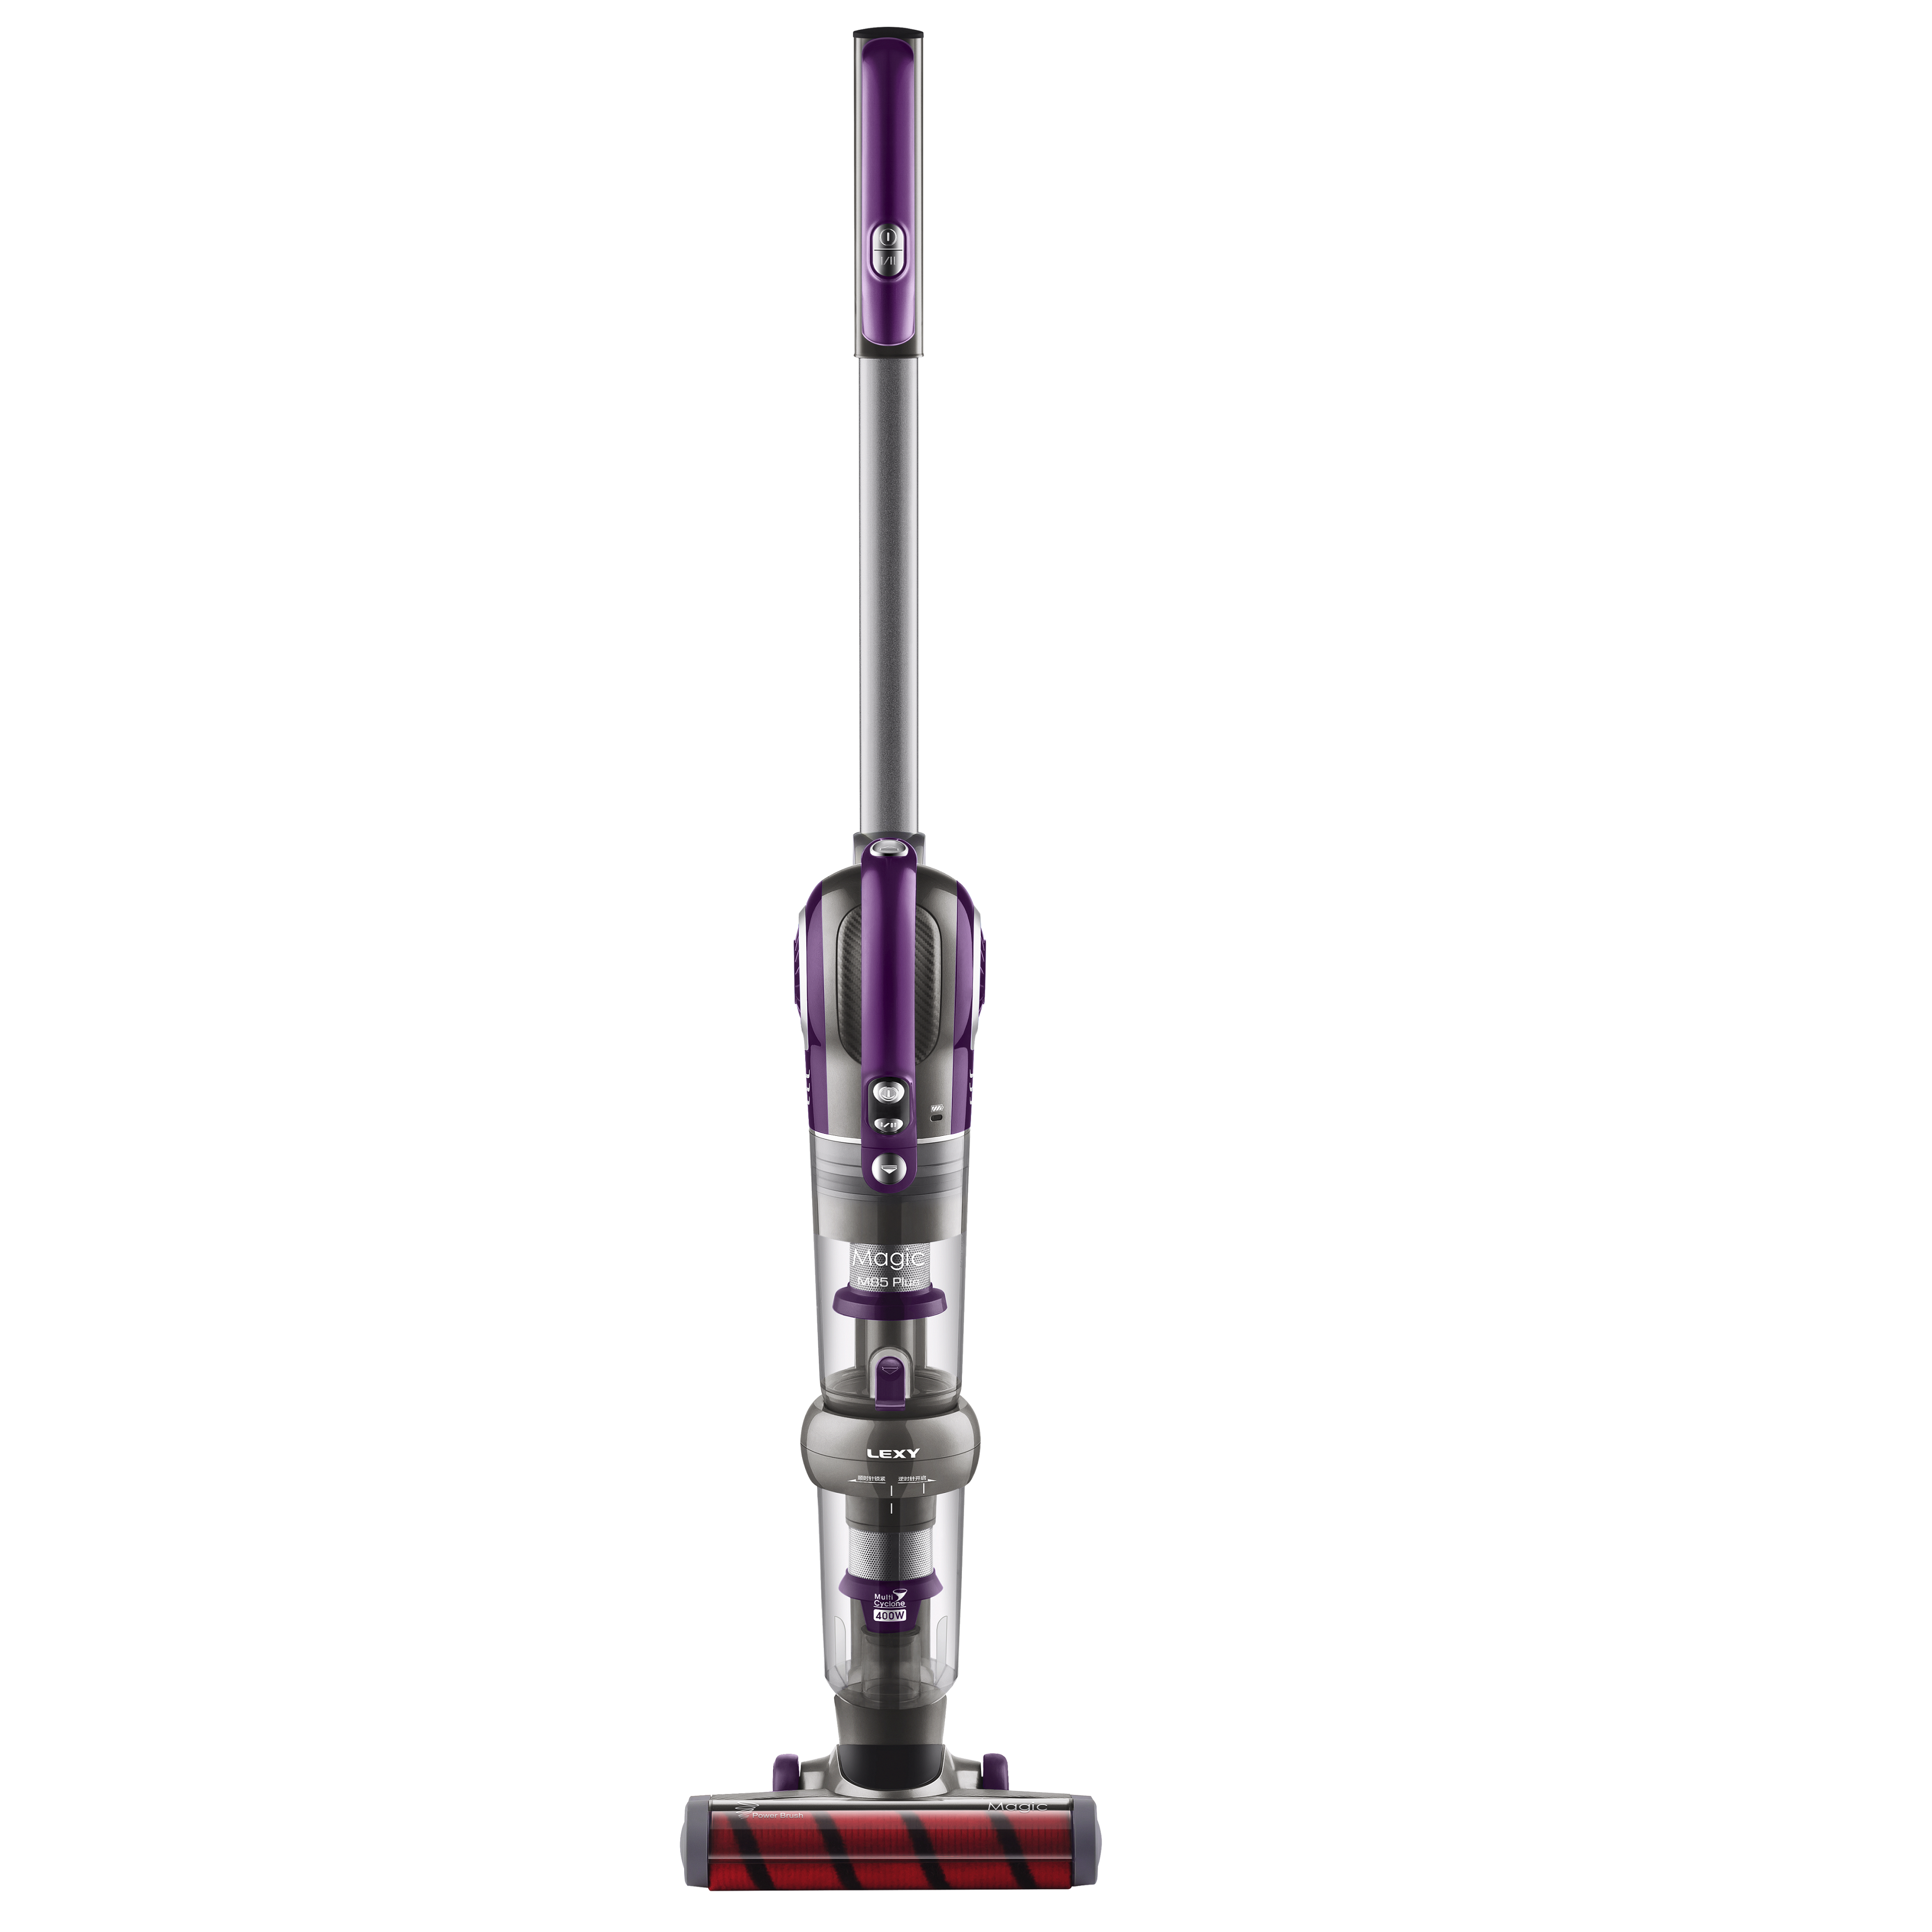 Magic series - Multi-function Cordless Stick Vacuum Cleaner